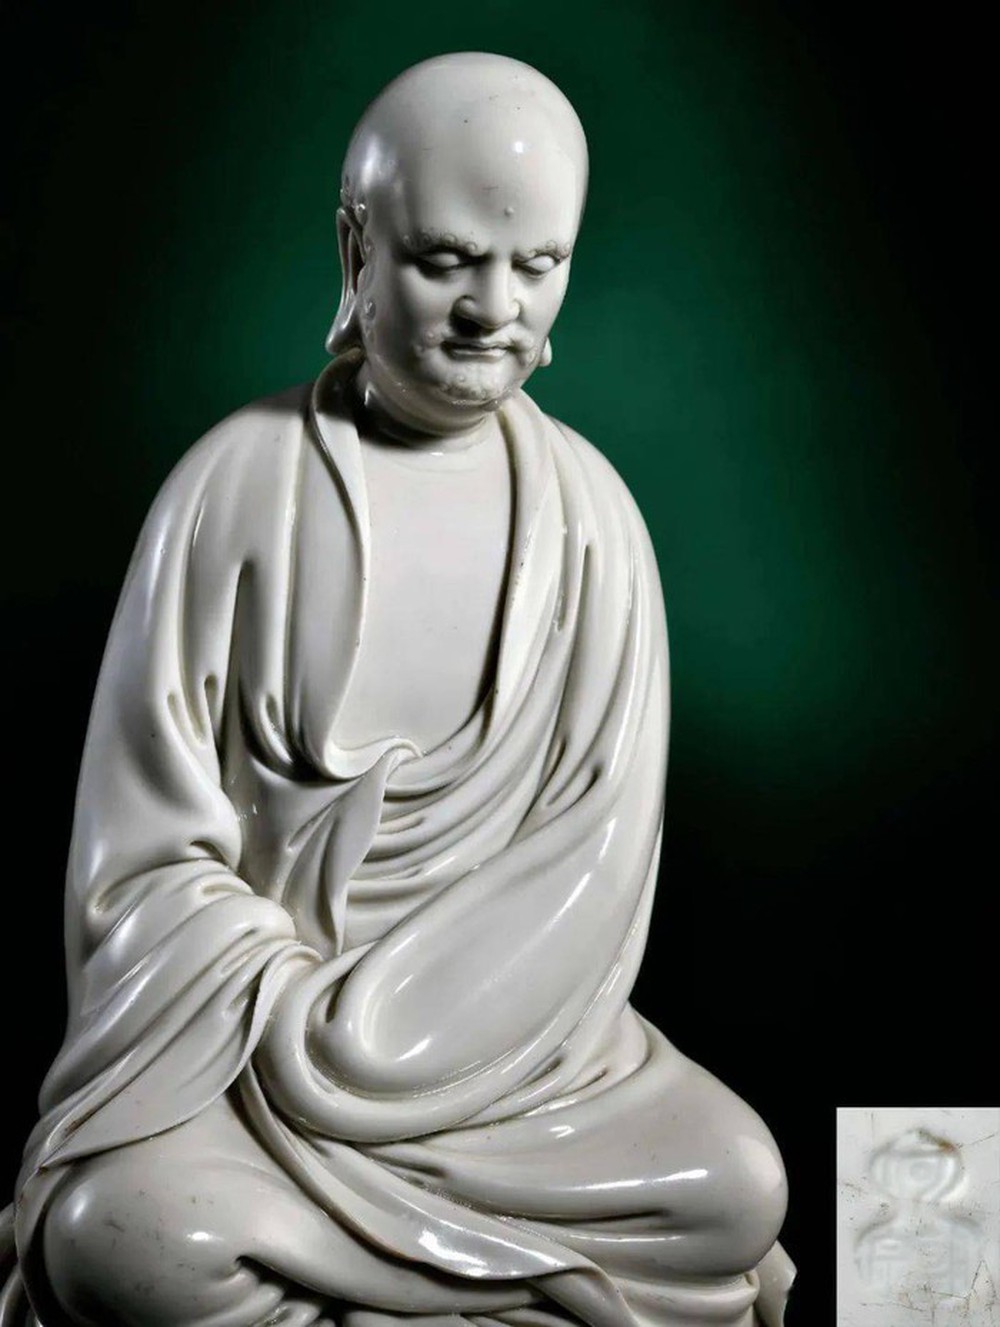 Tình cờ mua bức tượng cũ với giá 1,3 triệu đồng, người đàn ông không ngờ bán được giá gấp 30.000 lần - Ảnh 8.